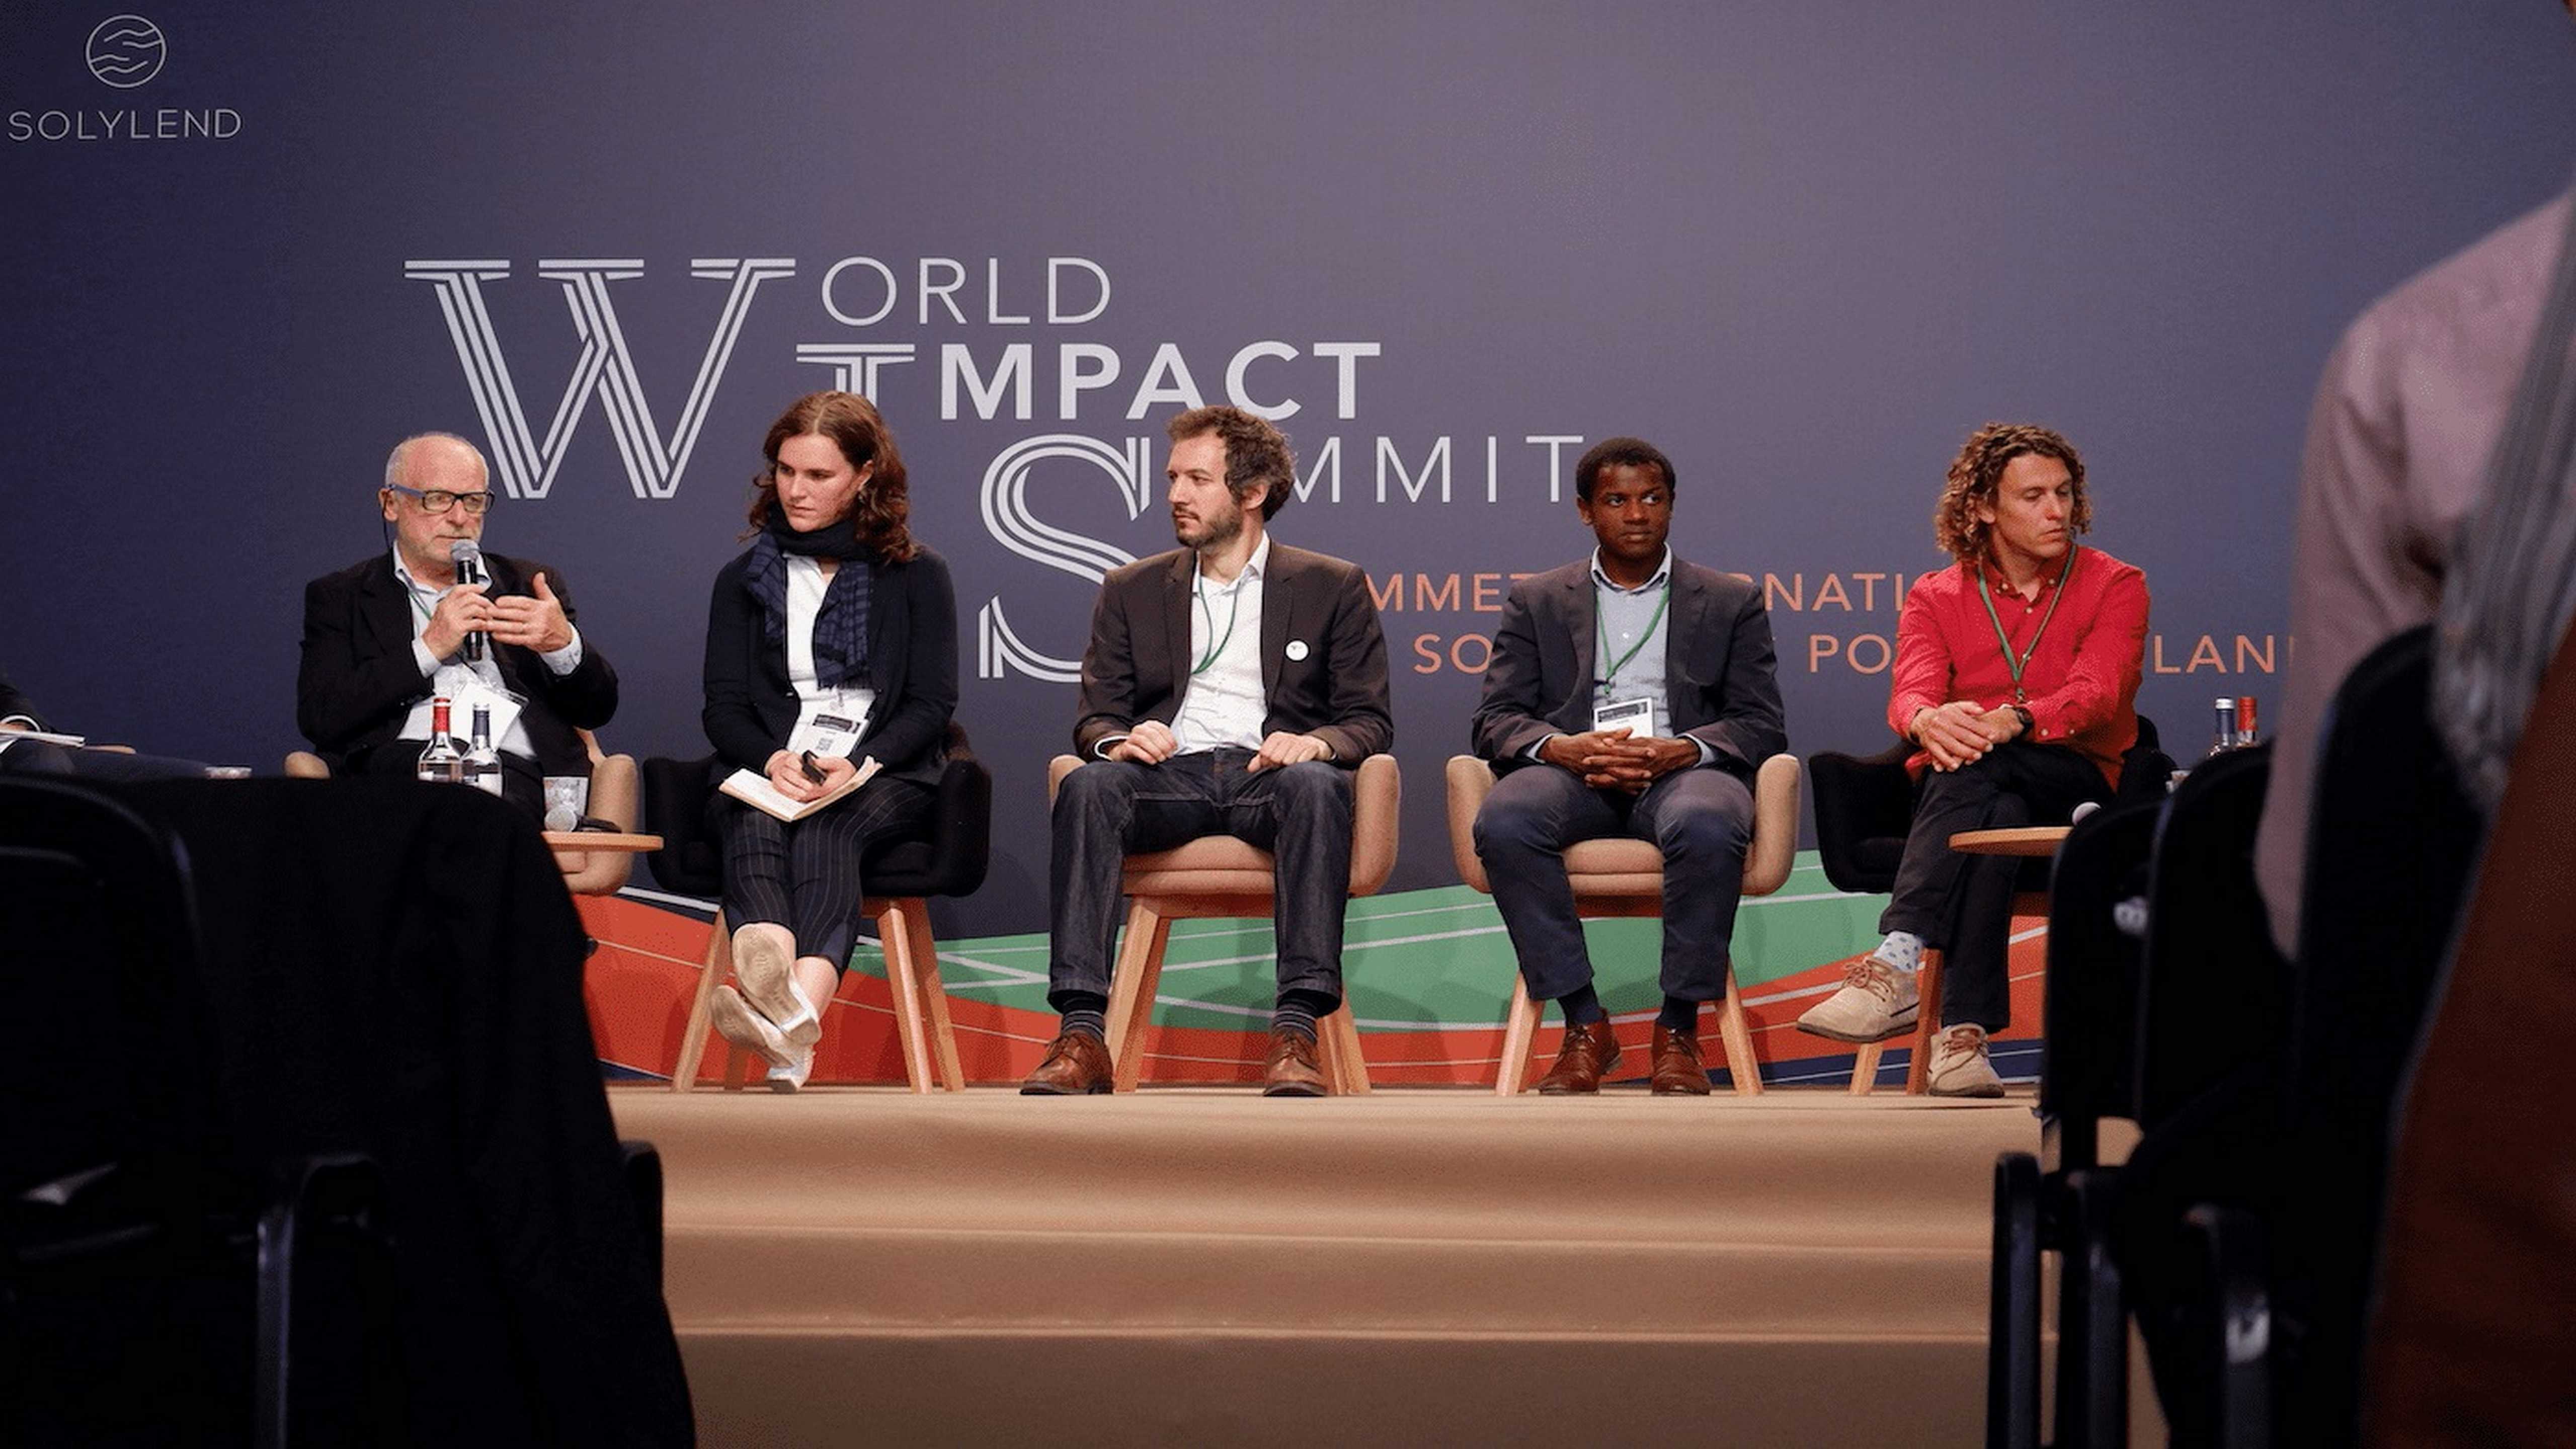 Reporté en octobre 2020 le "World Impact Summit"  lance un appel : "repenser le monde de demain"